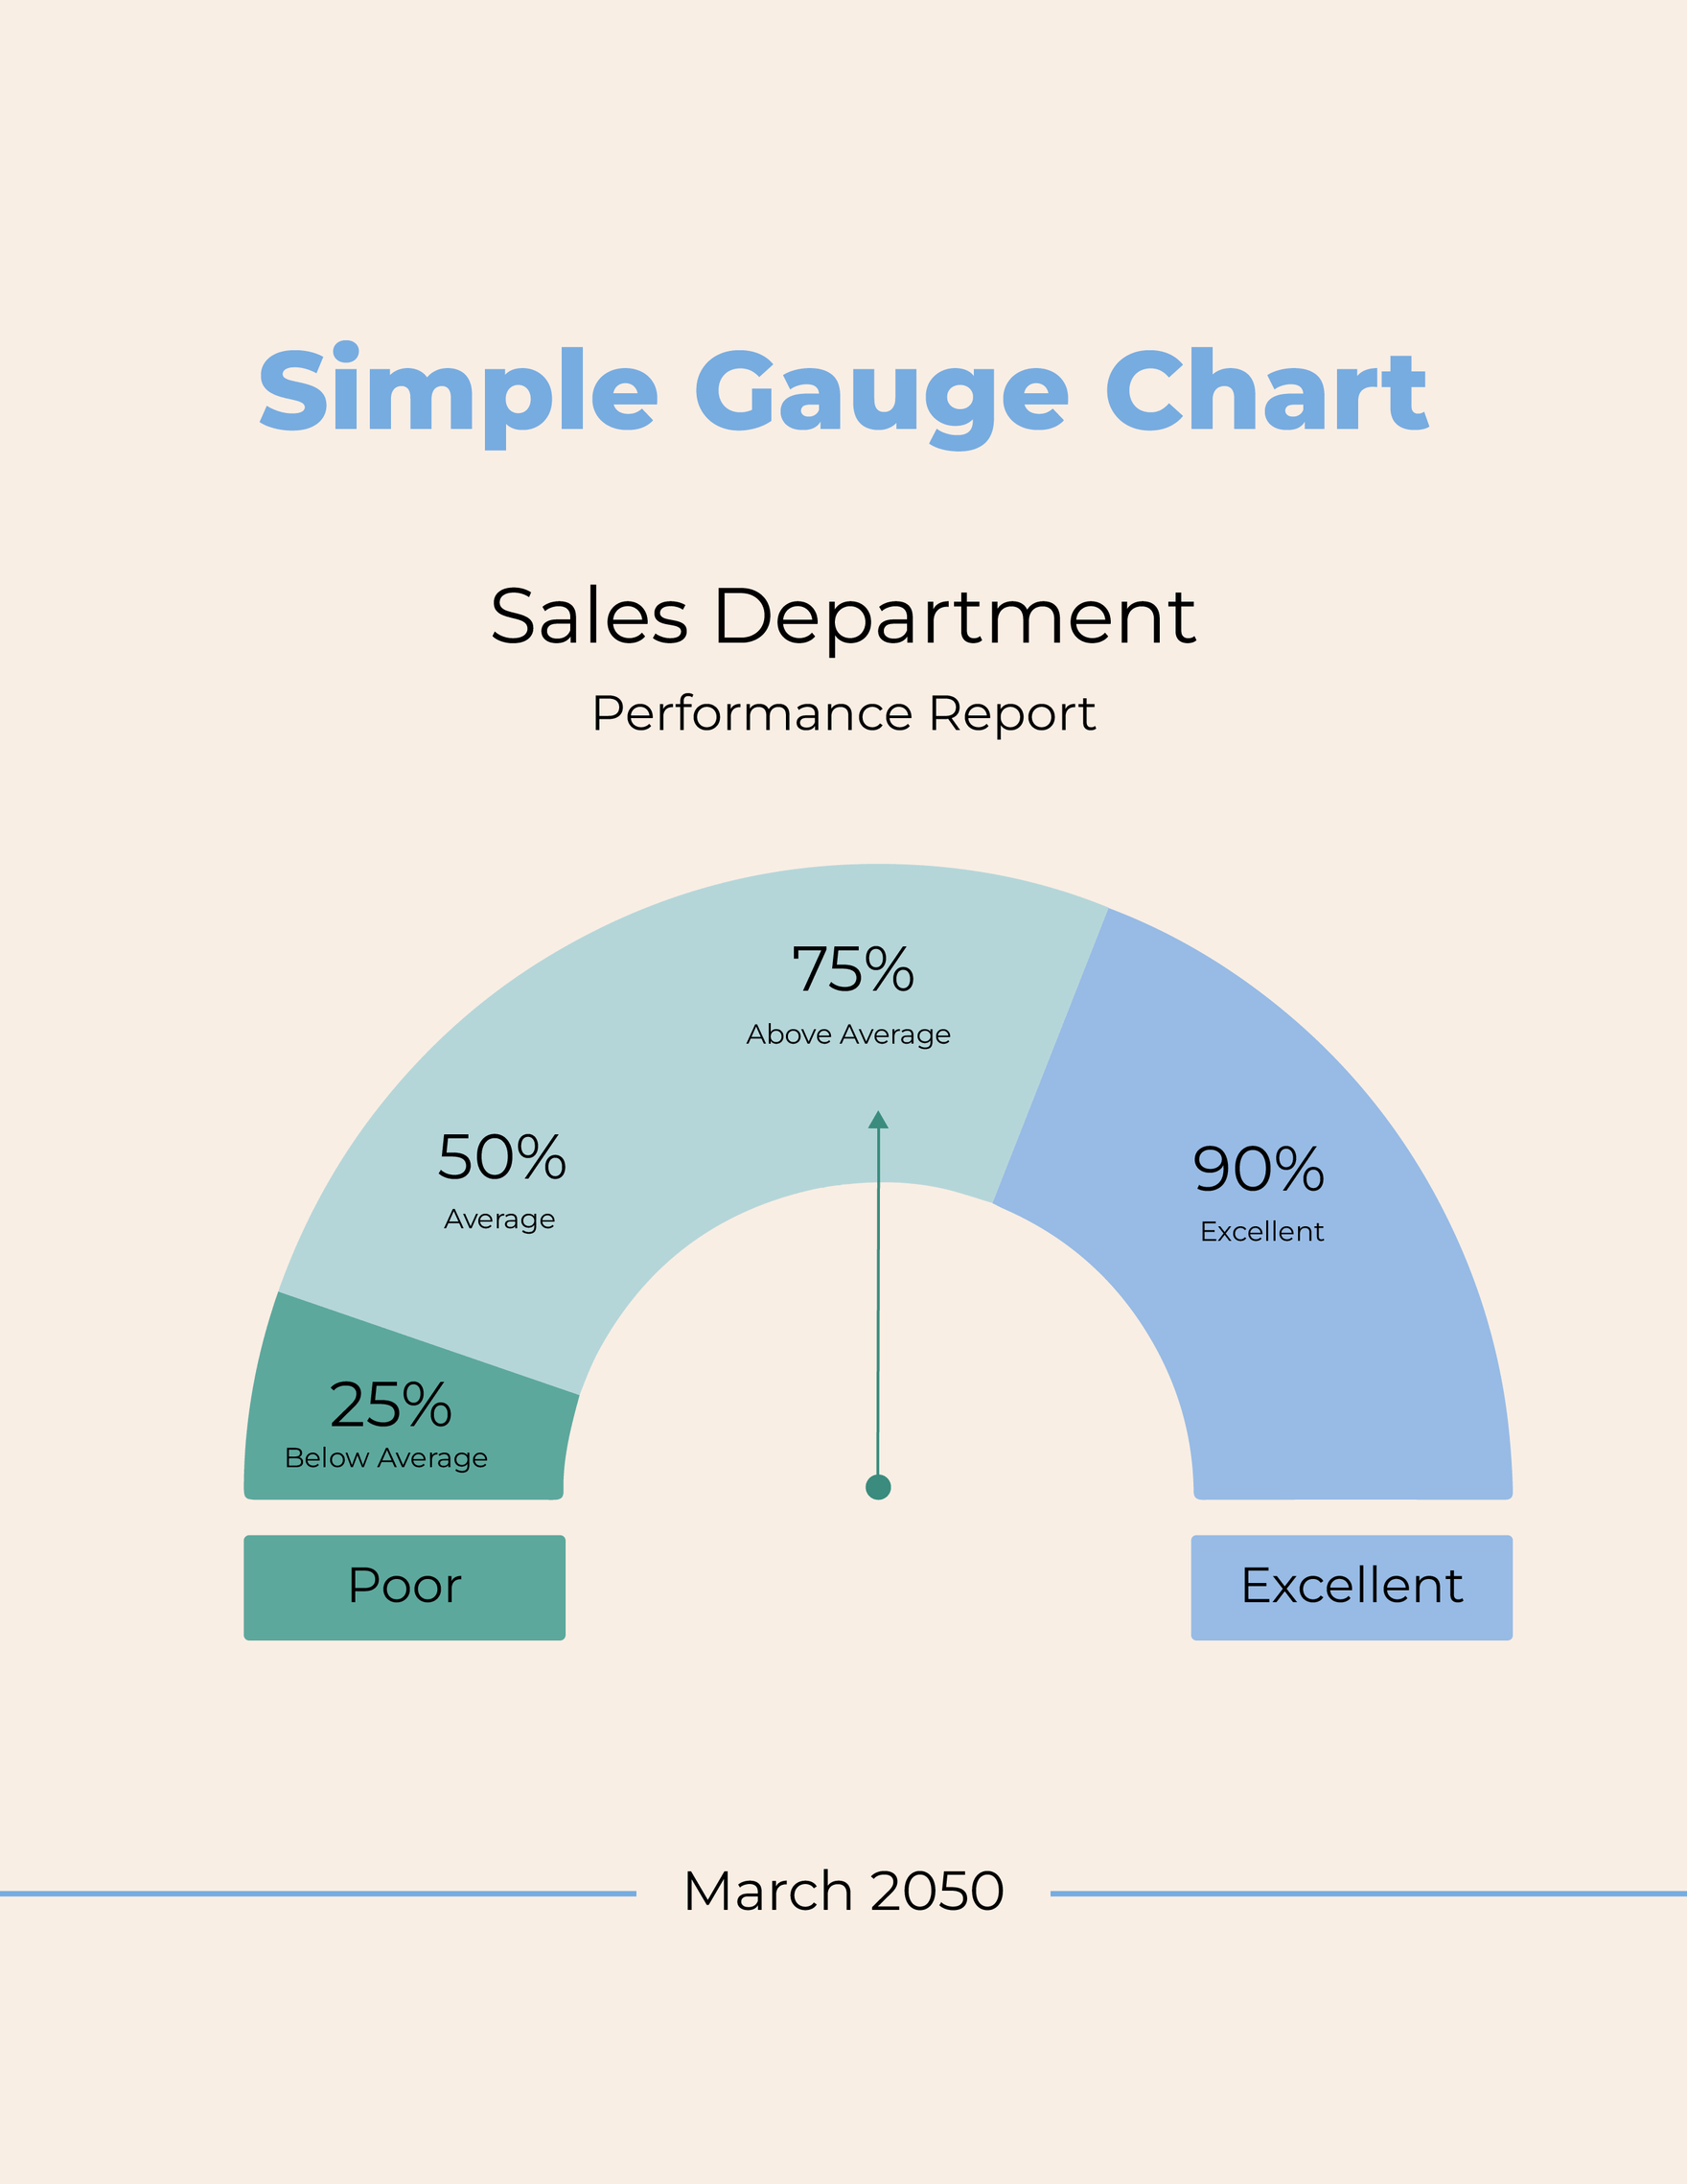 Free Simple Gauge Chart